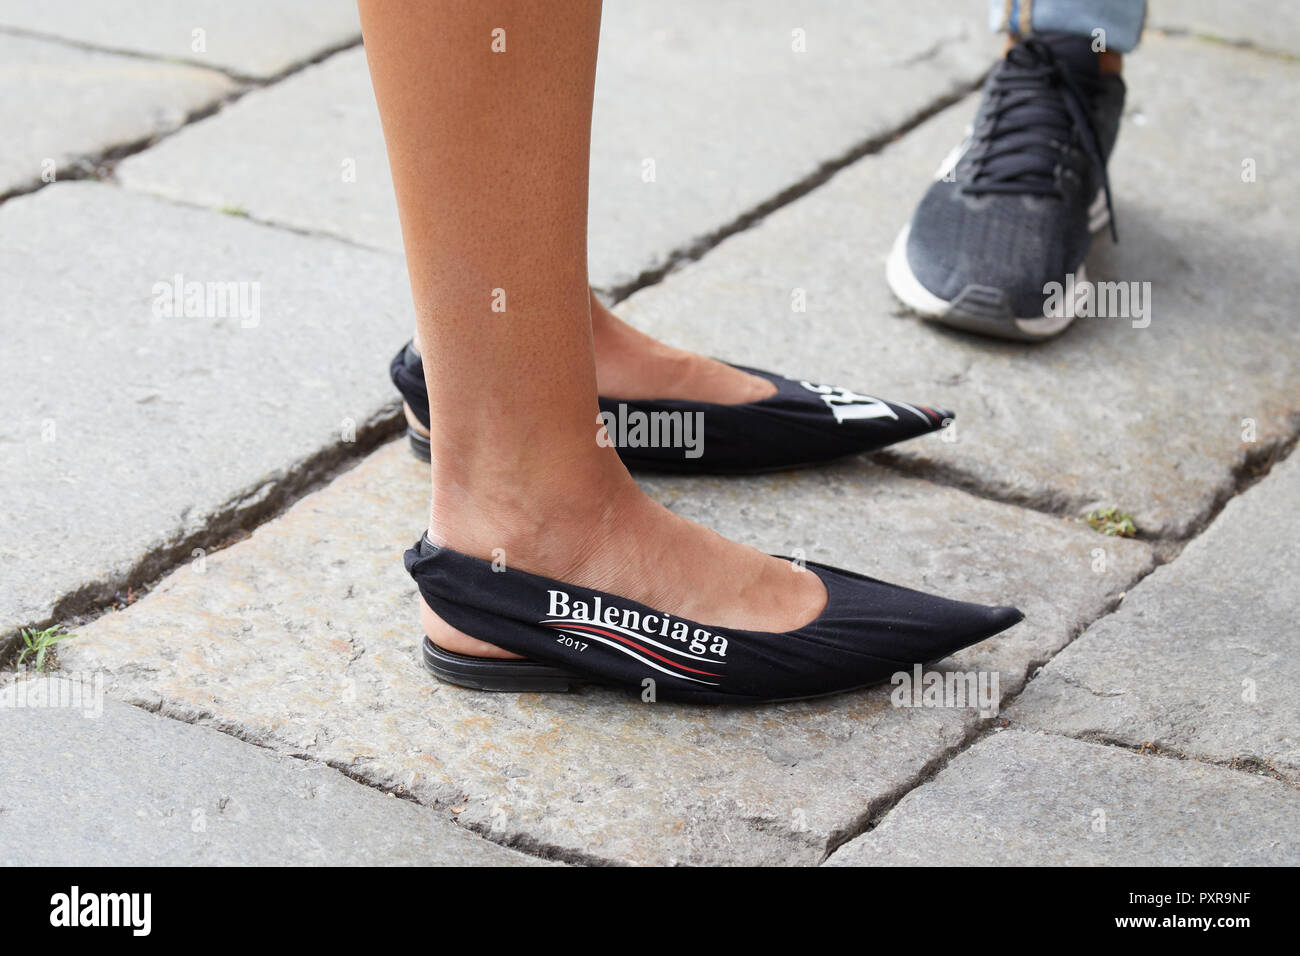 Milán, Italia - 22 de septiembre de 2018: Mujer con negro Balenciaga zapatos de punta antes la el Fashion Show, la Semana de la moda de street style Fotografía